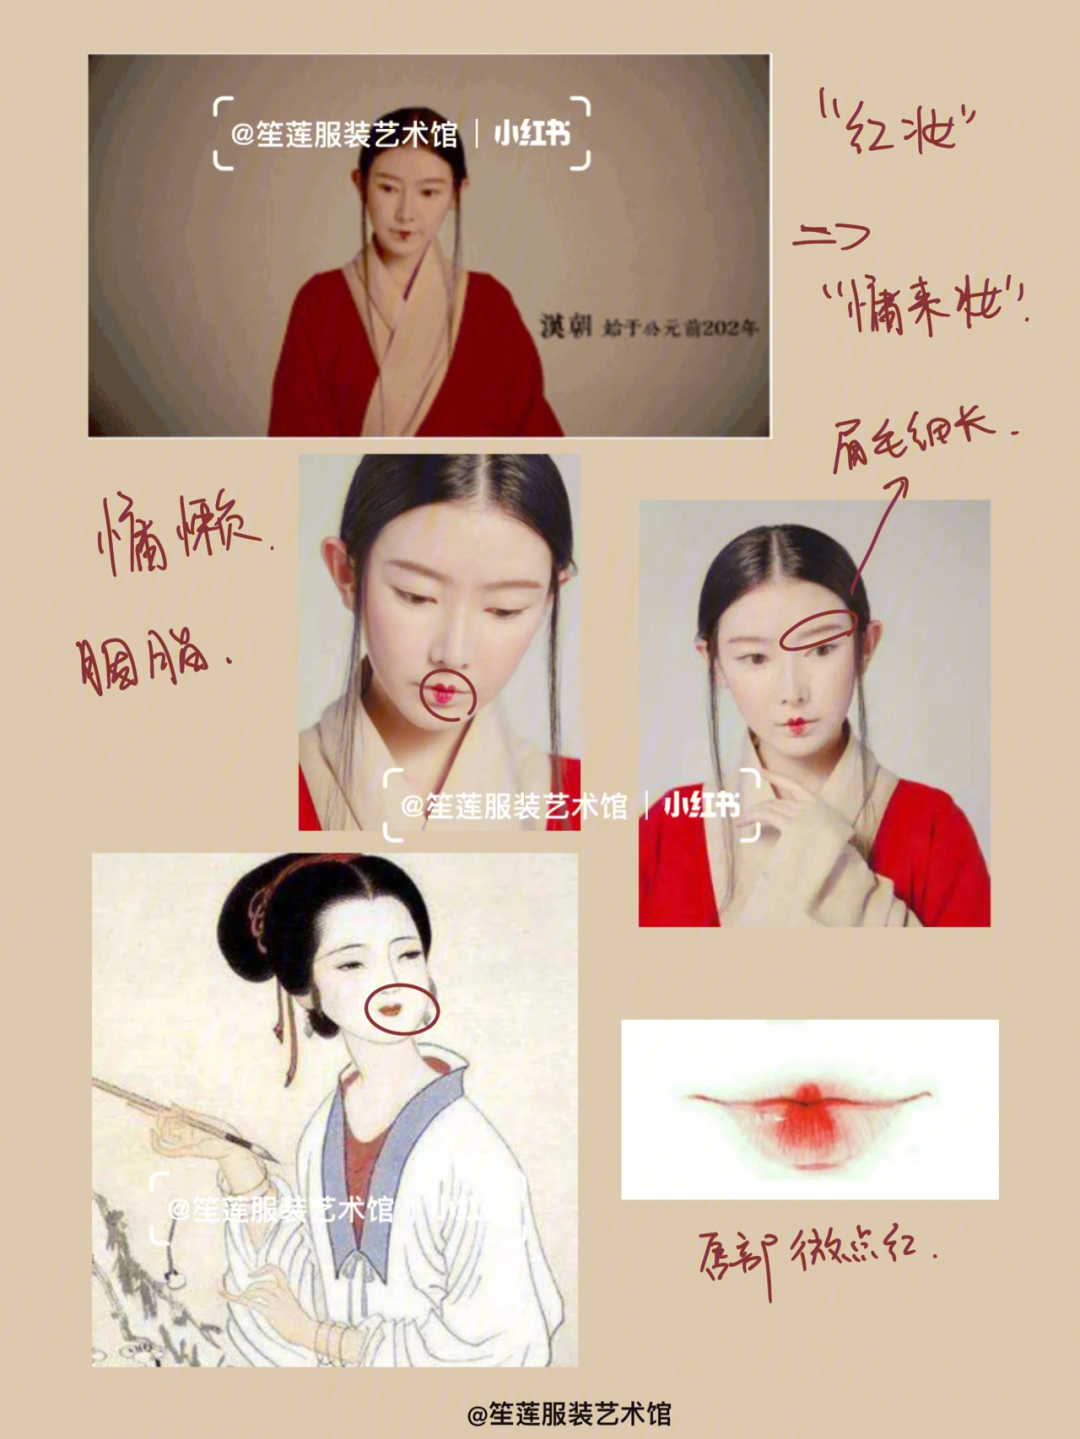 女子的妆容特色,那就不得不提到红妆了,红妆一词的出现便是在汉代